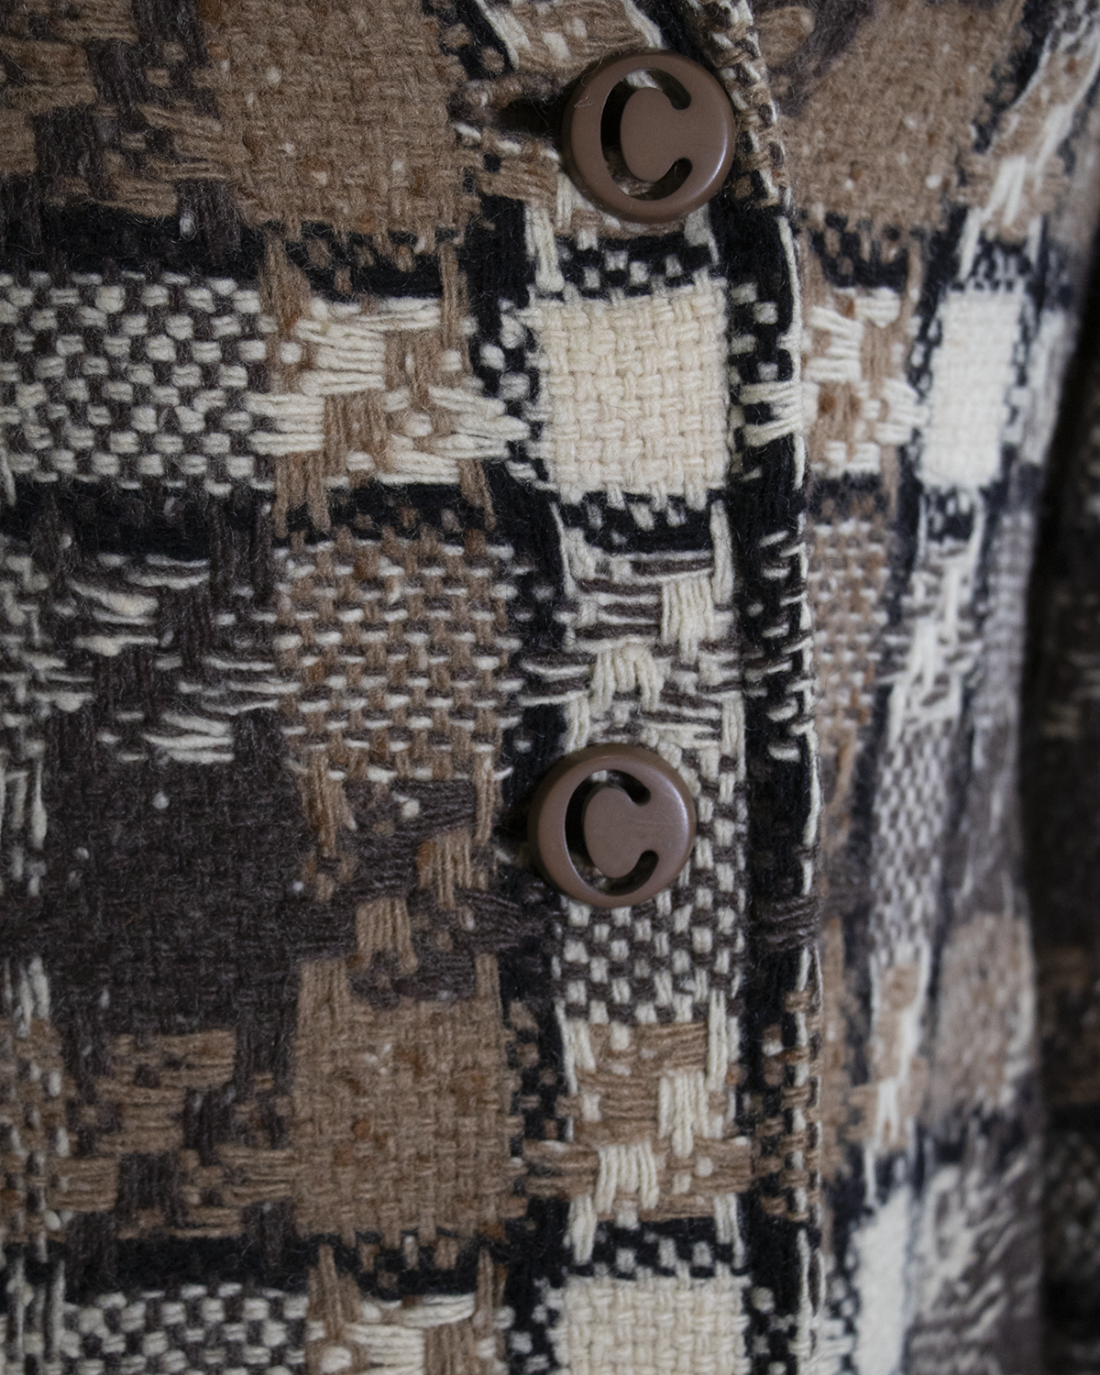 Pierre Cardin Wool Coat from 1970s